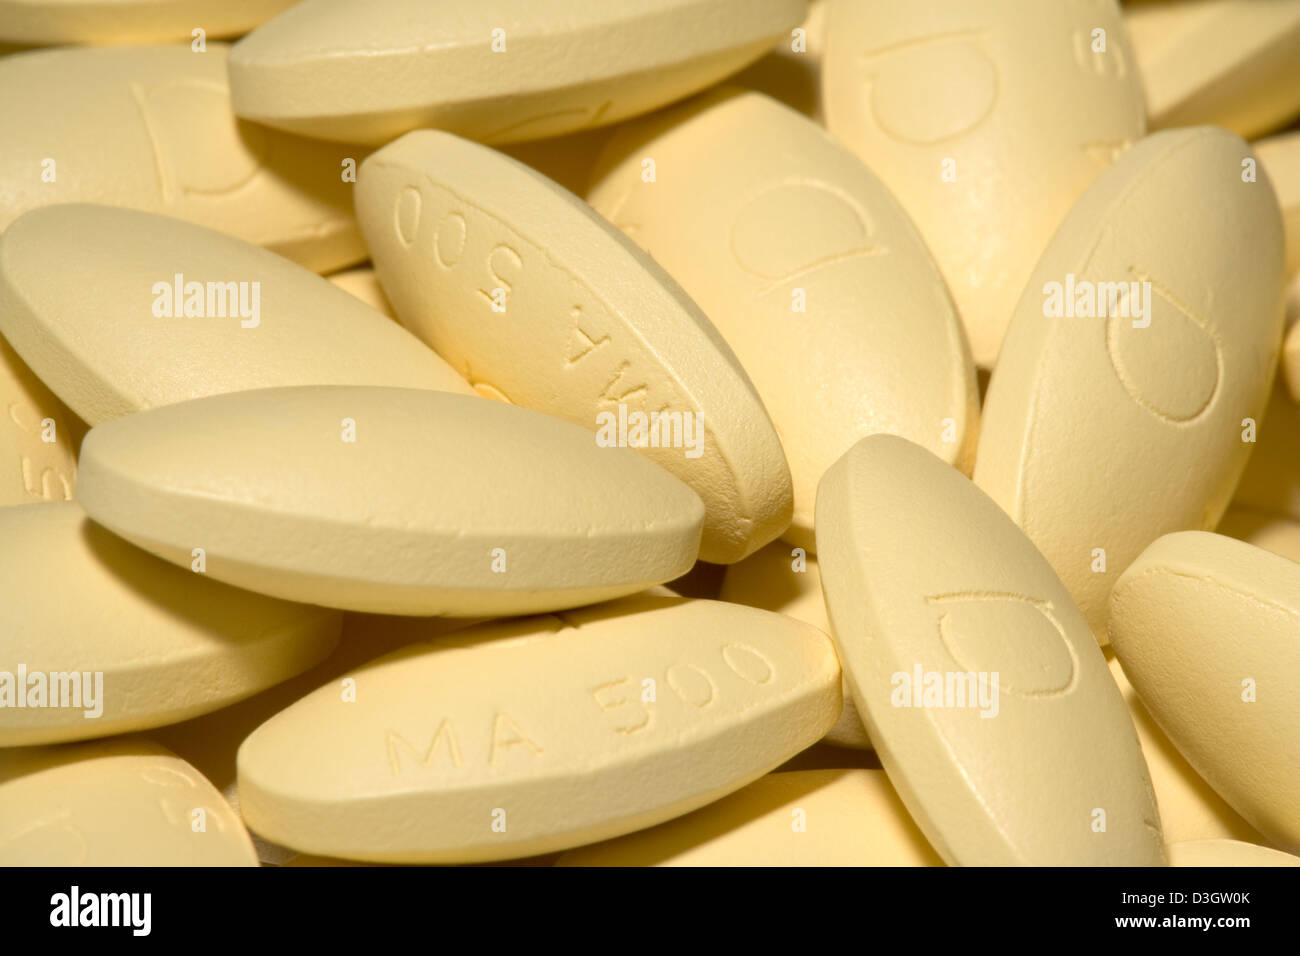 Mefenamic Säure Tabletten Ponstan Magen Krämpfe Schmerzen Schmerzen Pillen  Stockfotografie - Alamy